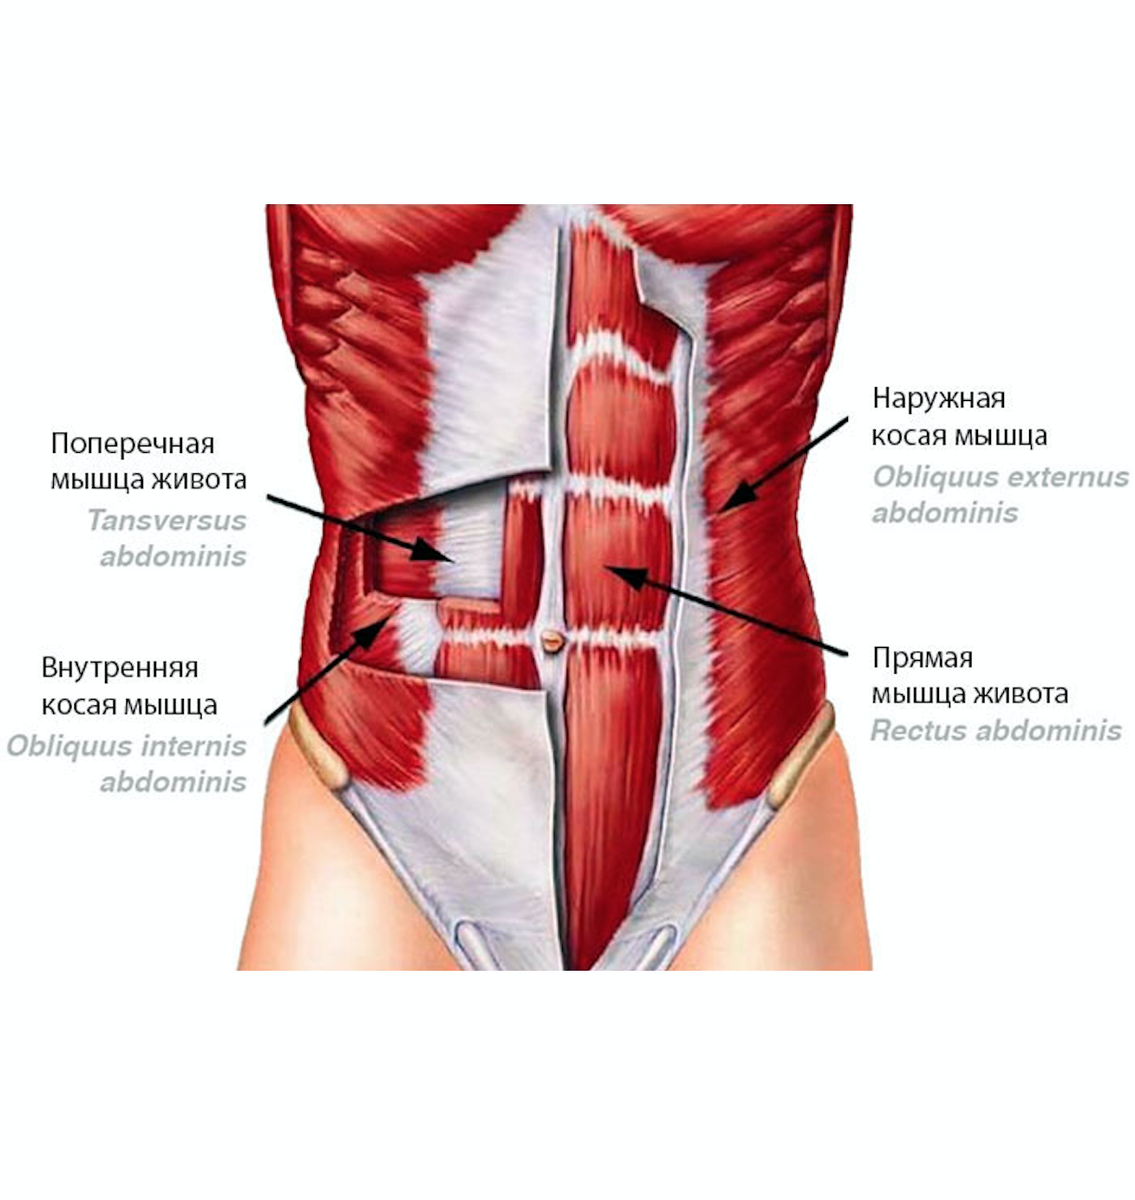 Сильные мышцы живота. Поперечная мышца живота (m. transversus abdominis). Obliquus internus abdominis. Косые мышцы живота анатомия. Наружная косая мышца живота.